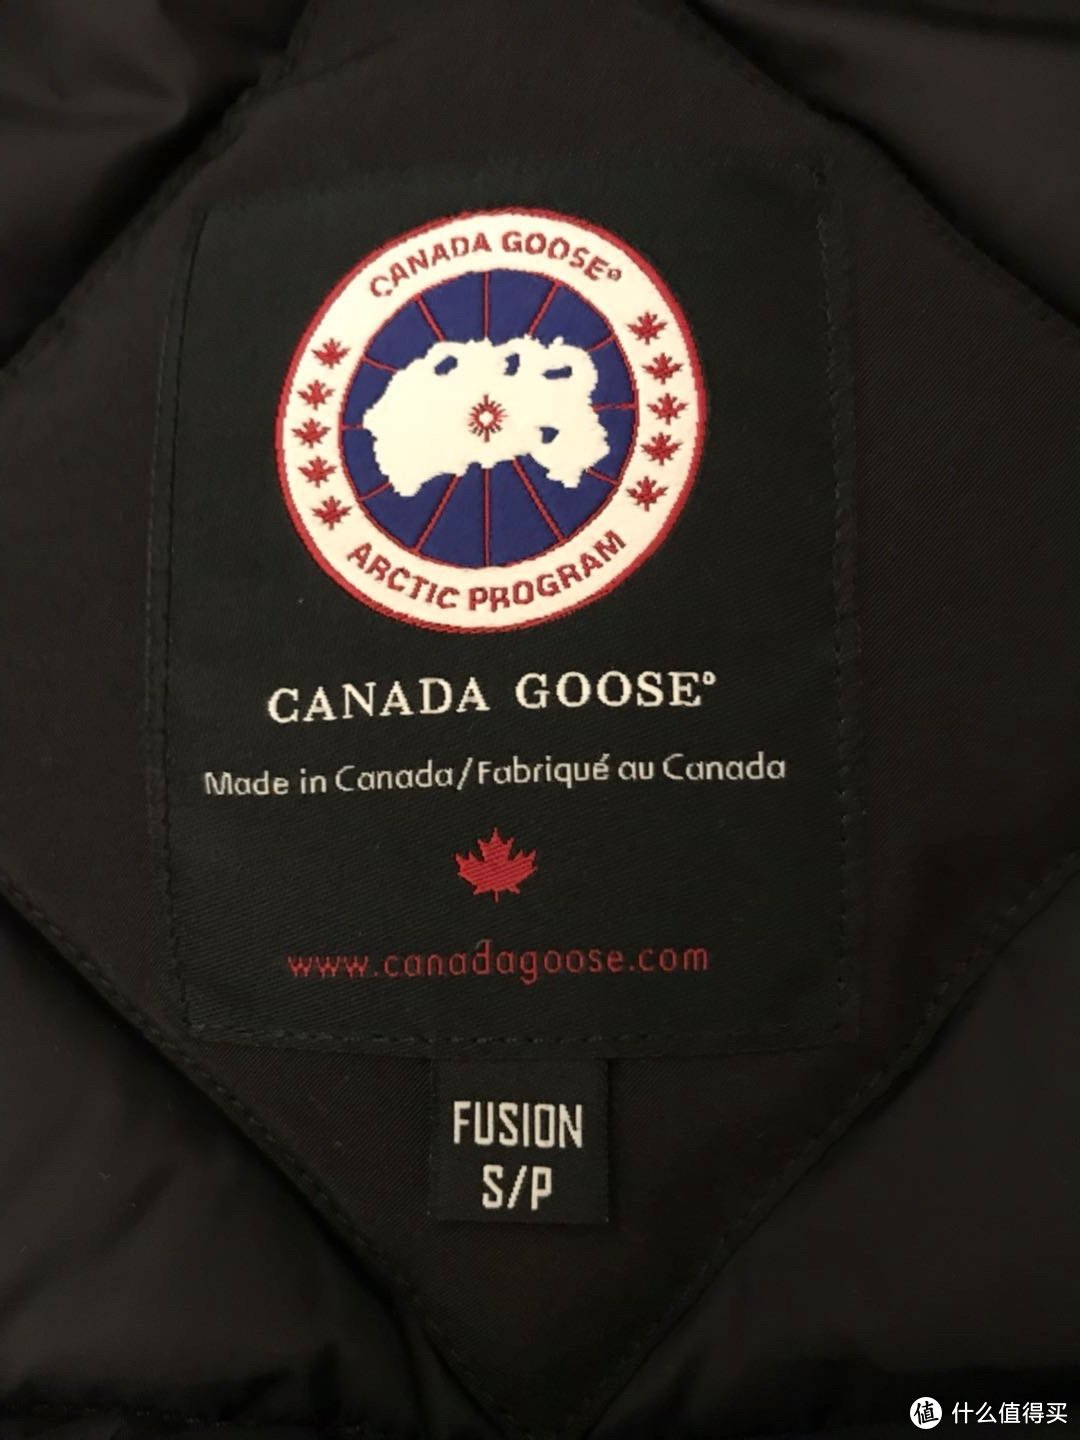 来自加拿大的问候加拿大鹅羽绒服CANADA GOOSE开箱_男士羽绒服_什么值得买